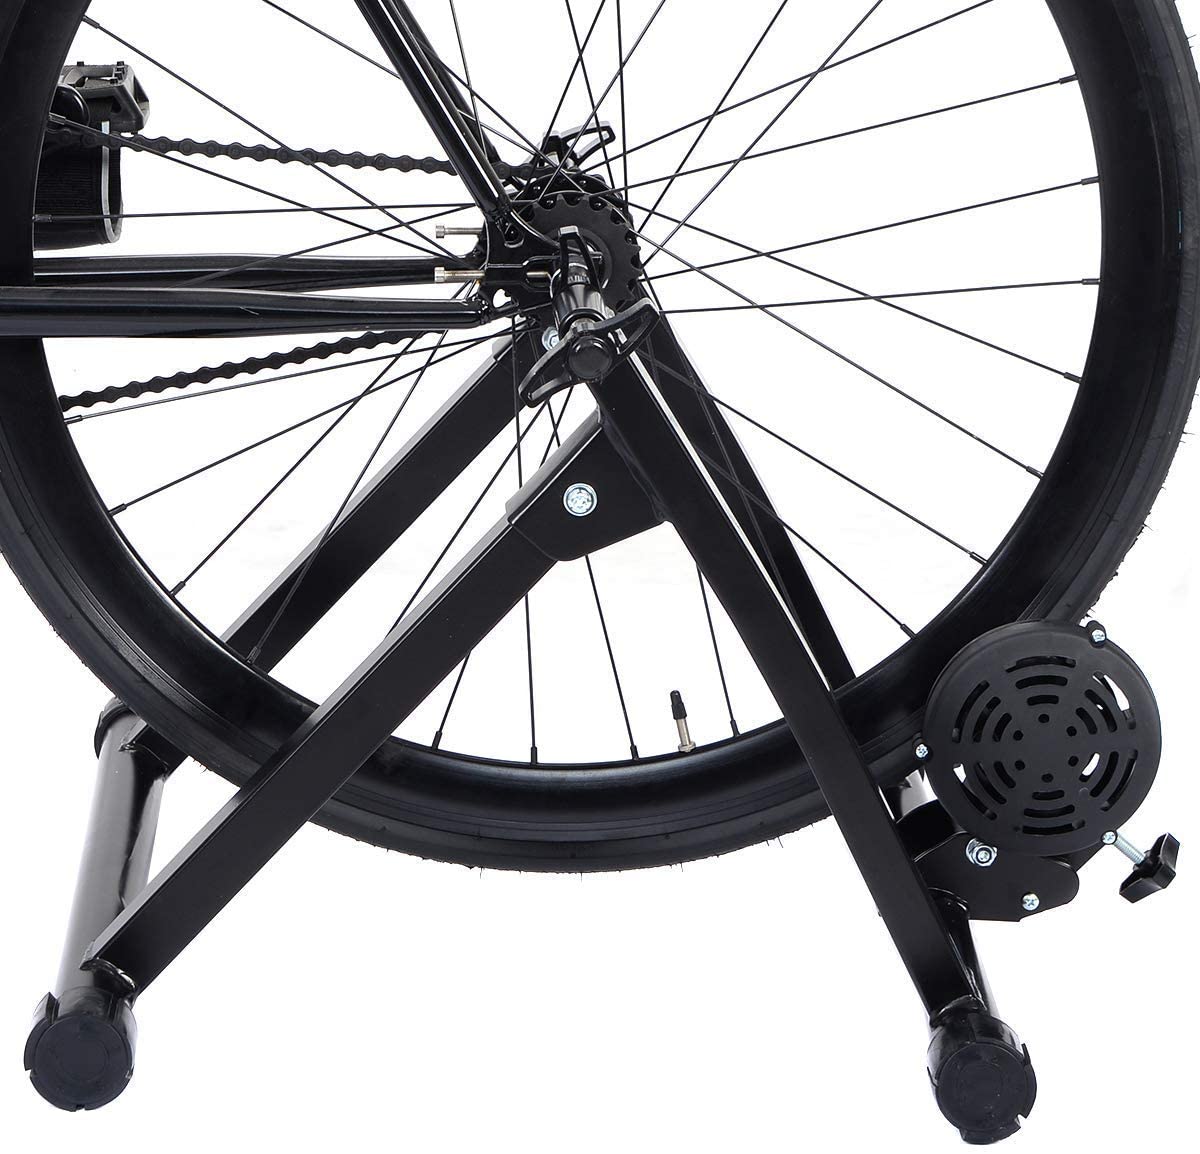  COSTWAY Bicicleta Estática Soporte Rodillo de Ciclismo Entrenamiento Plegable Carga Máxima hasta 150 kg Color Negro 